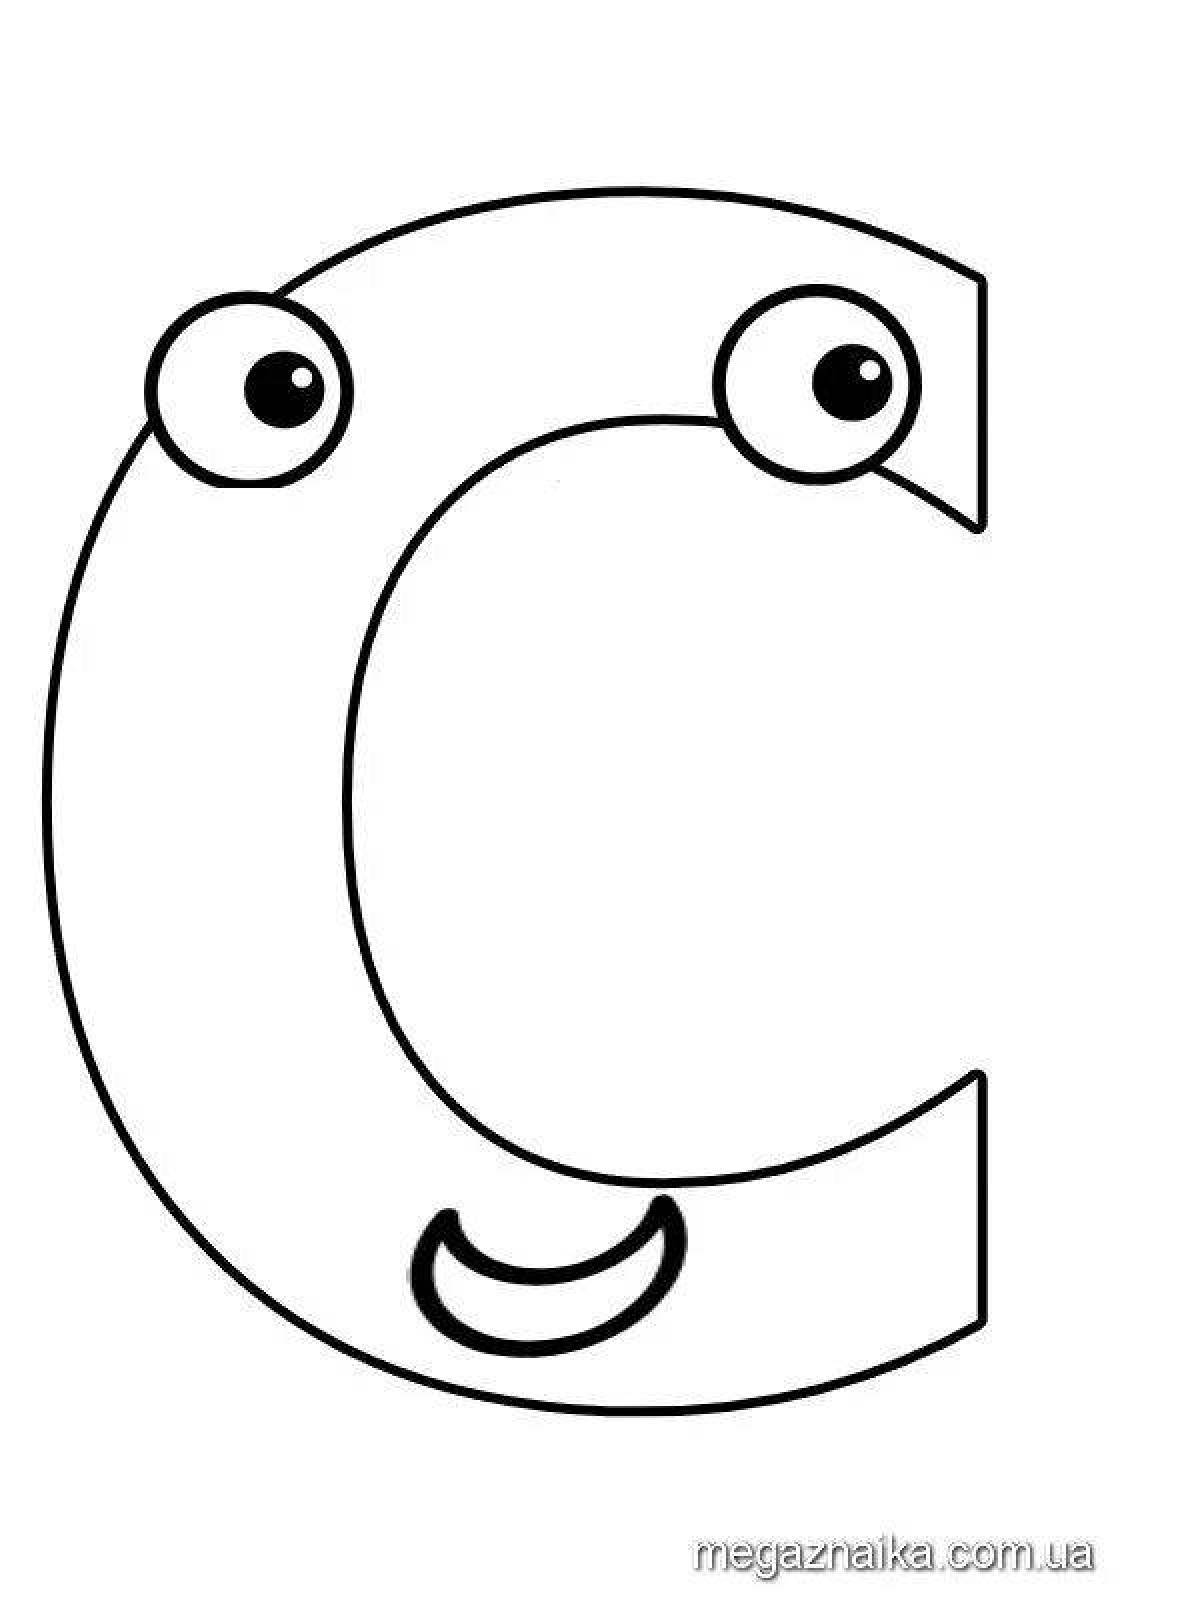 Раскраска Буква B немецкого алфавита – BLUME – Развивающие иллюстрации